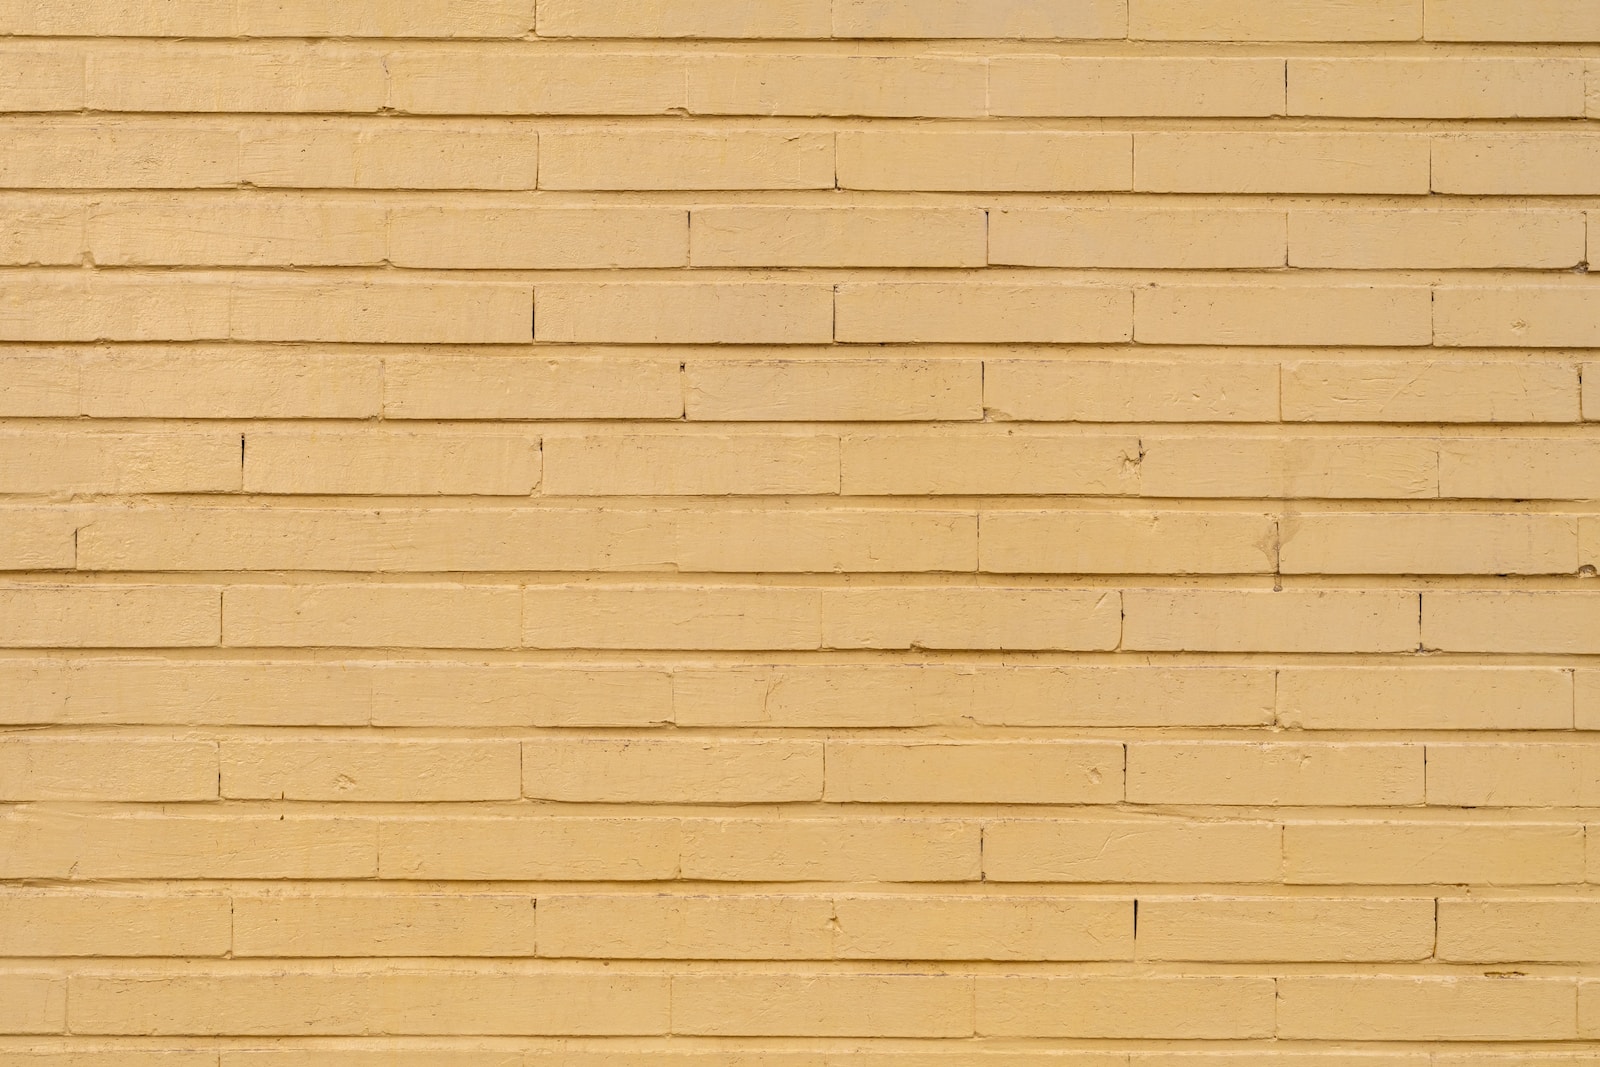 Bruine bakstenen muur overdag.  Hoe u de beste kleuren kiest om uw huis op te frissen